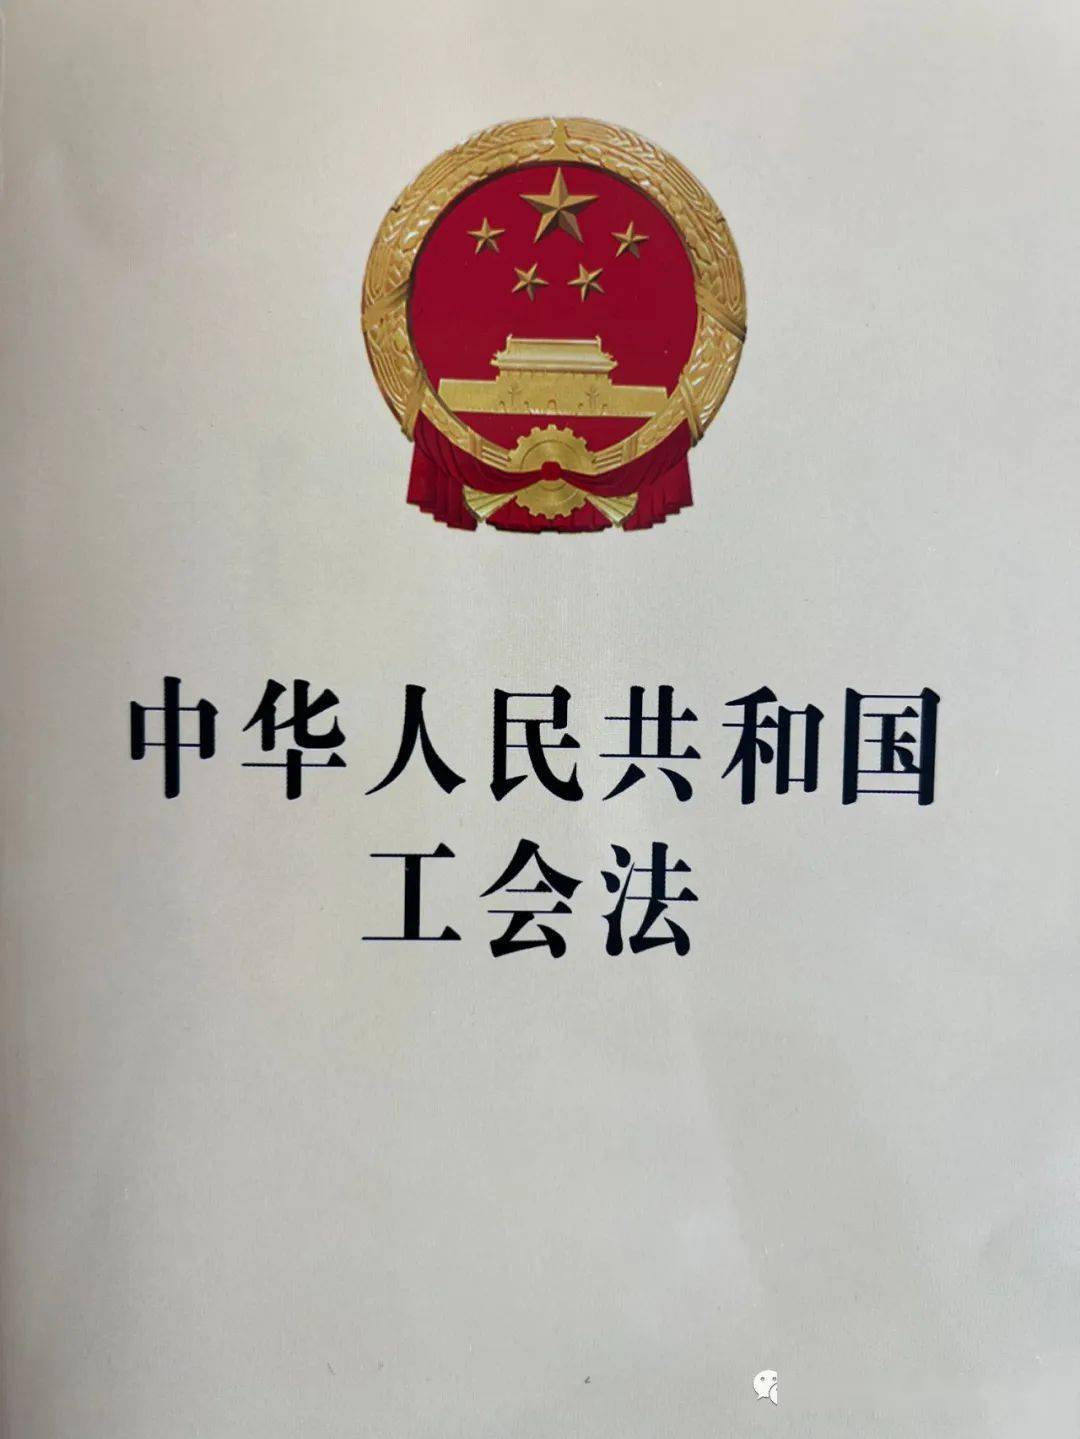 为全面学习宣传贯彻落实新修改的《中华人民共和国工会法》,巴林右旗